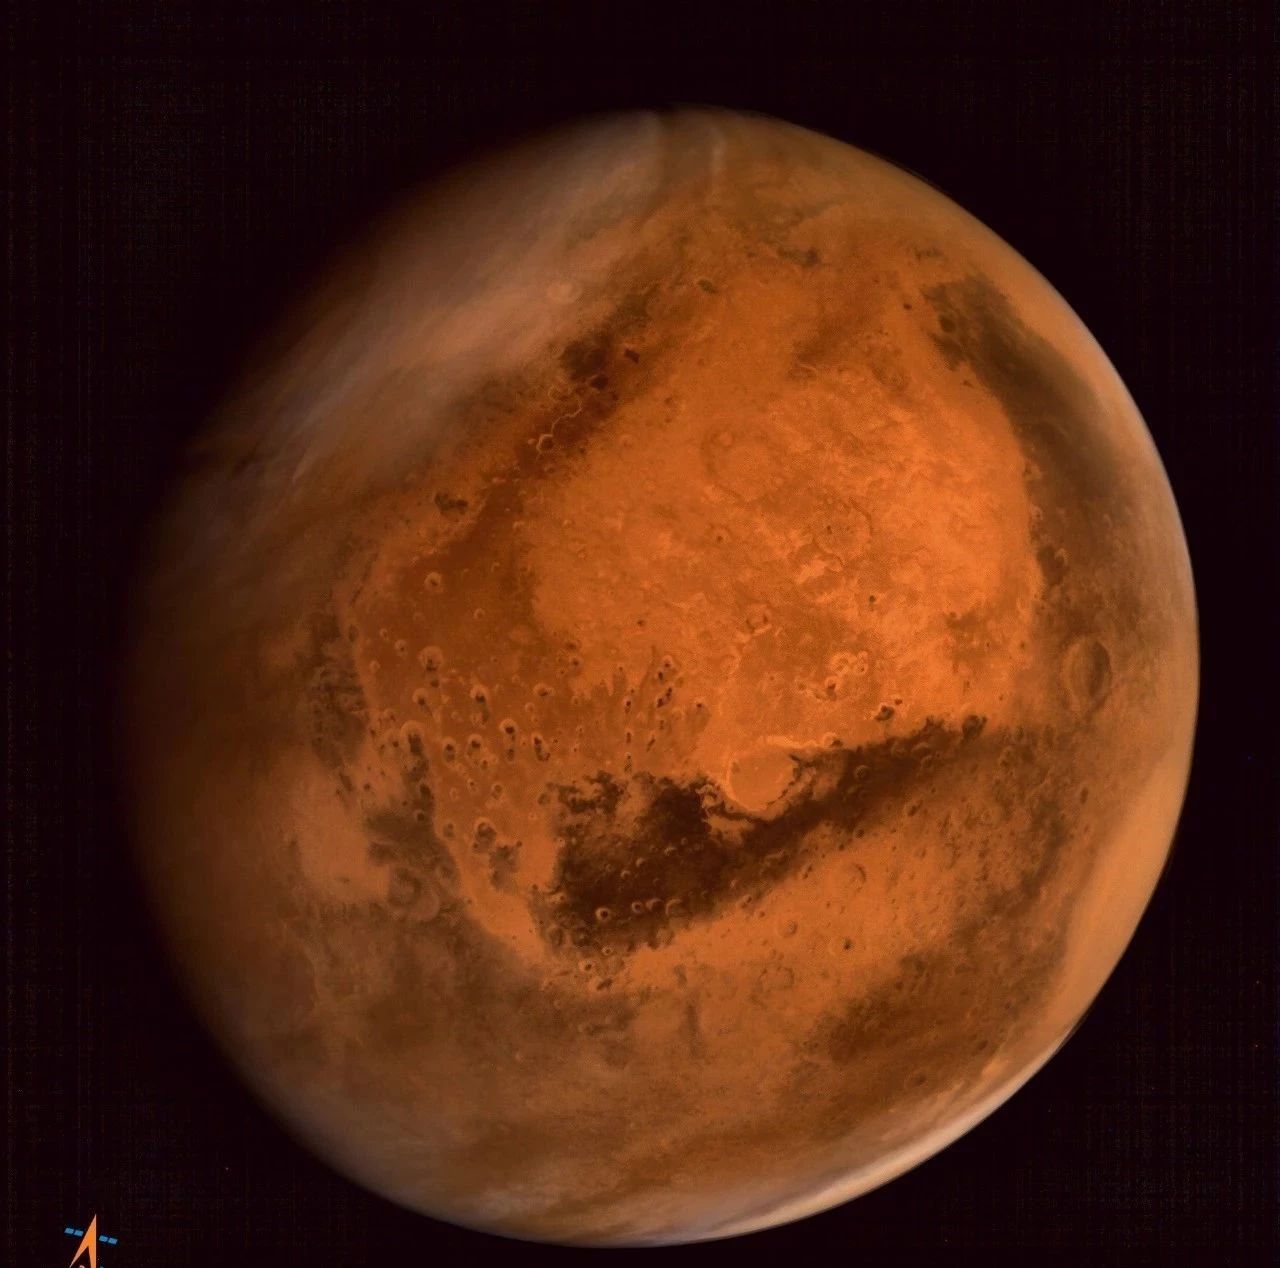 中國火星探測器“真容”首度公開！關於取什麼名字網友吵翻了